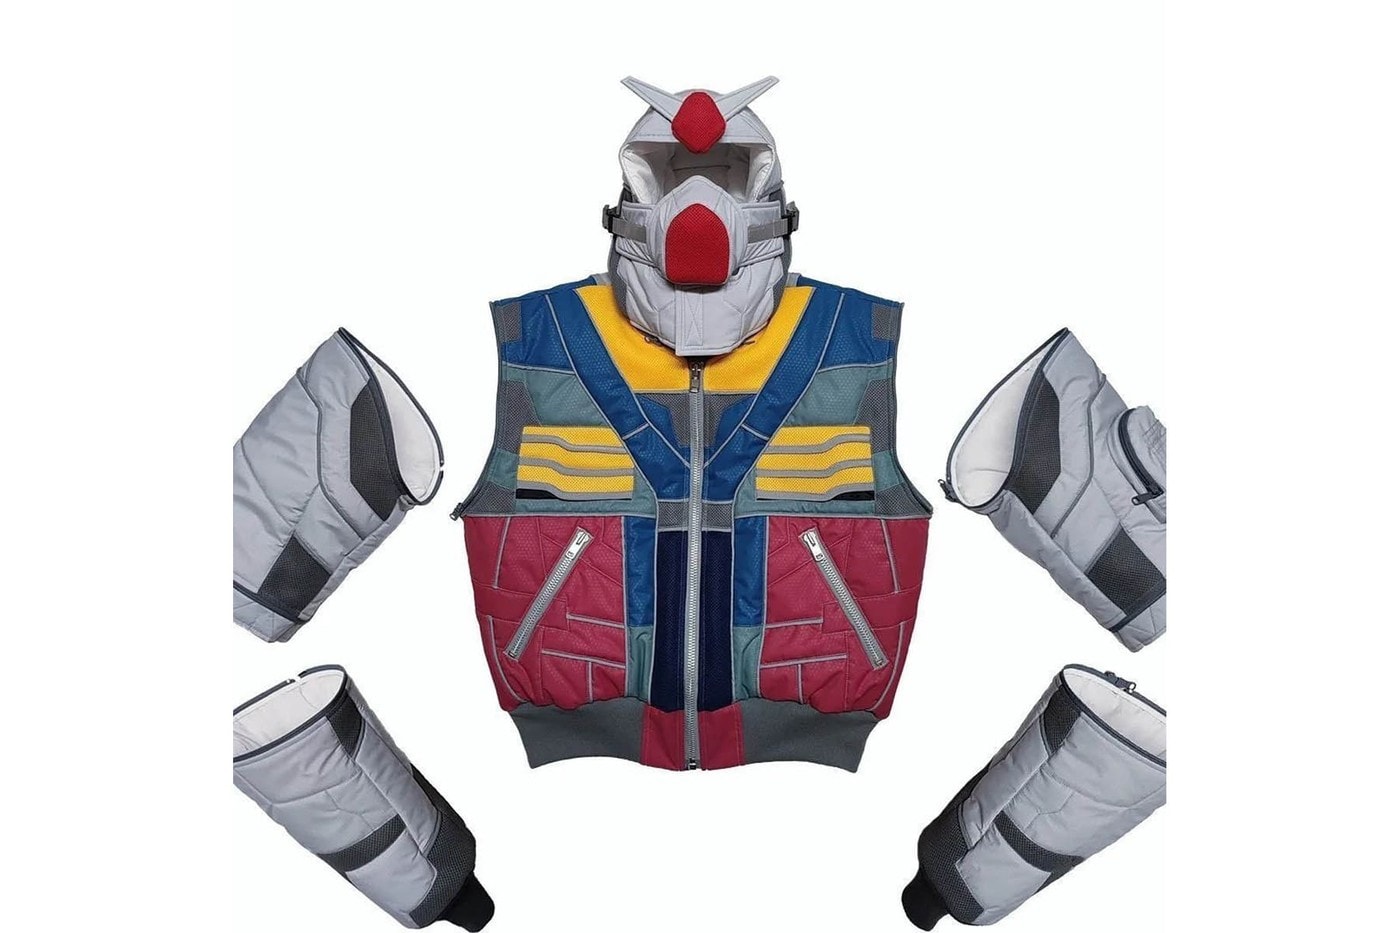 東京手製單位 MEMENTOMORI 打造《機動戰士高达 Gundam》主題雙面穿飛行外套